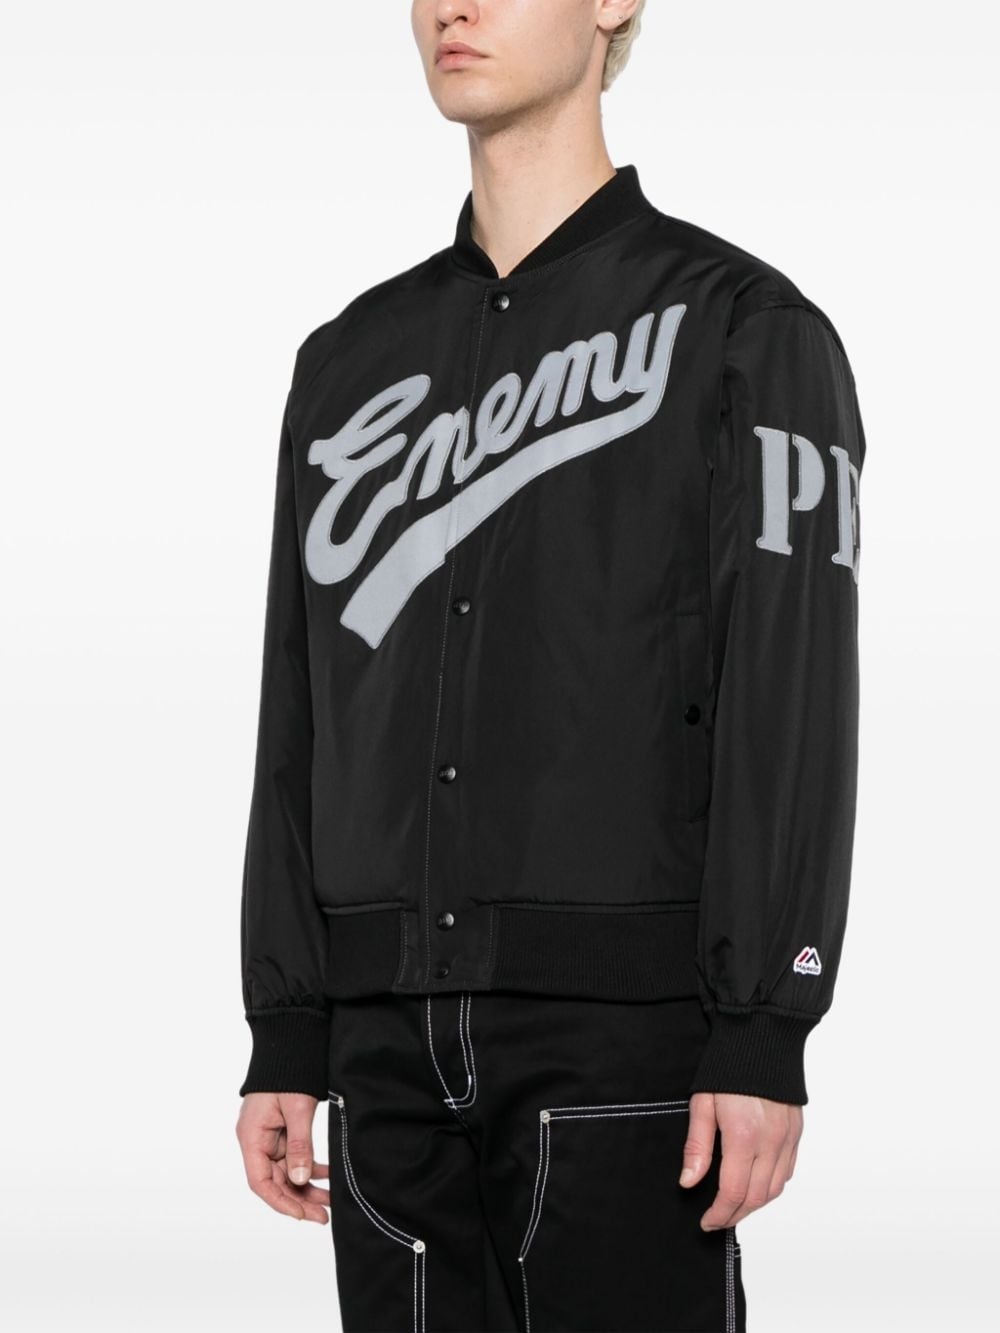 x Public Enemy x Majestic logo-embroidered bomber jacket - 3